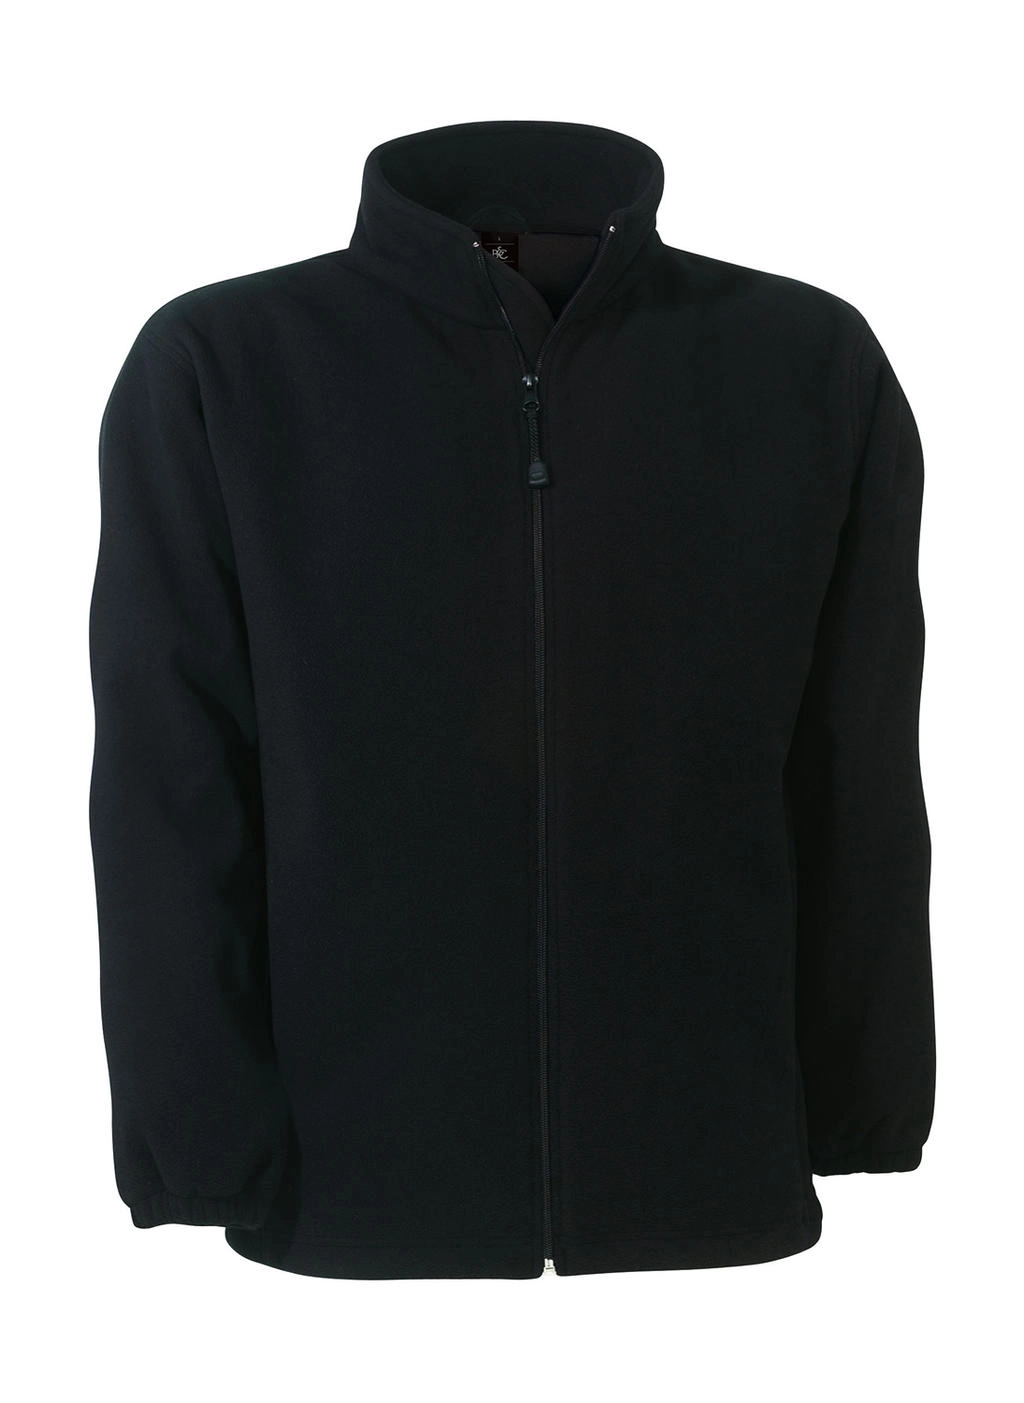 WindProtek Waterproof Fleece Jacket zum Besticken und Bedrucken in der Farbe Black mit Ihren Logo, Schriftzug oder Motiv.